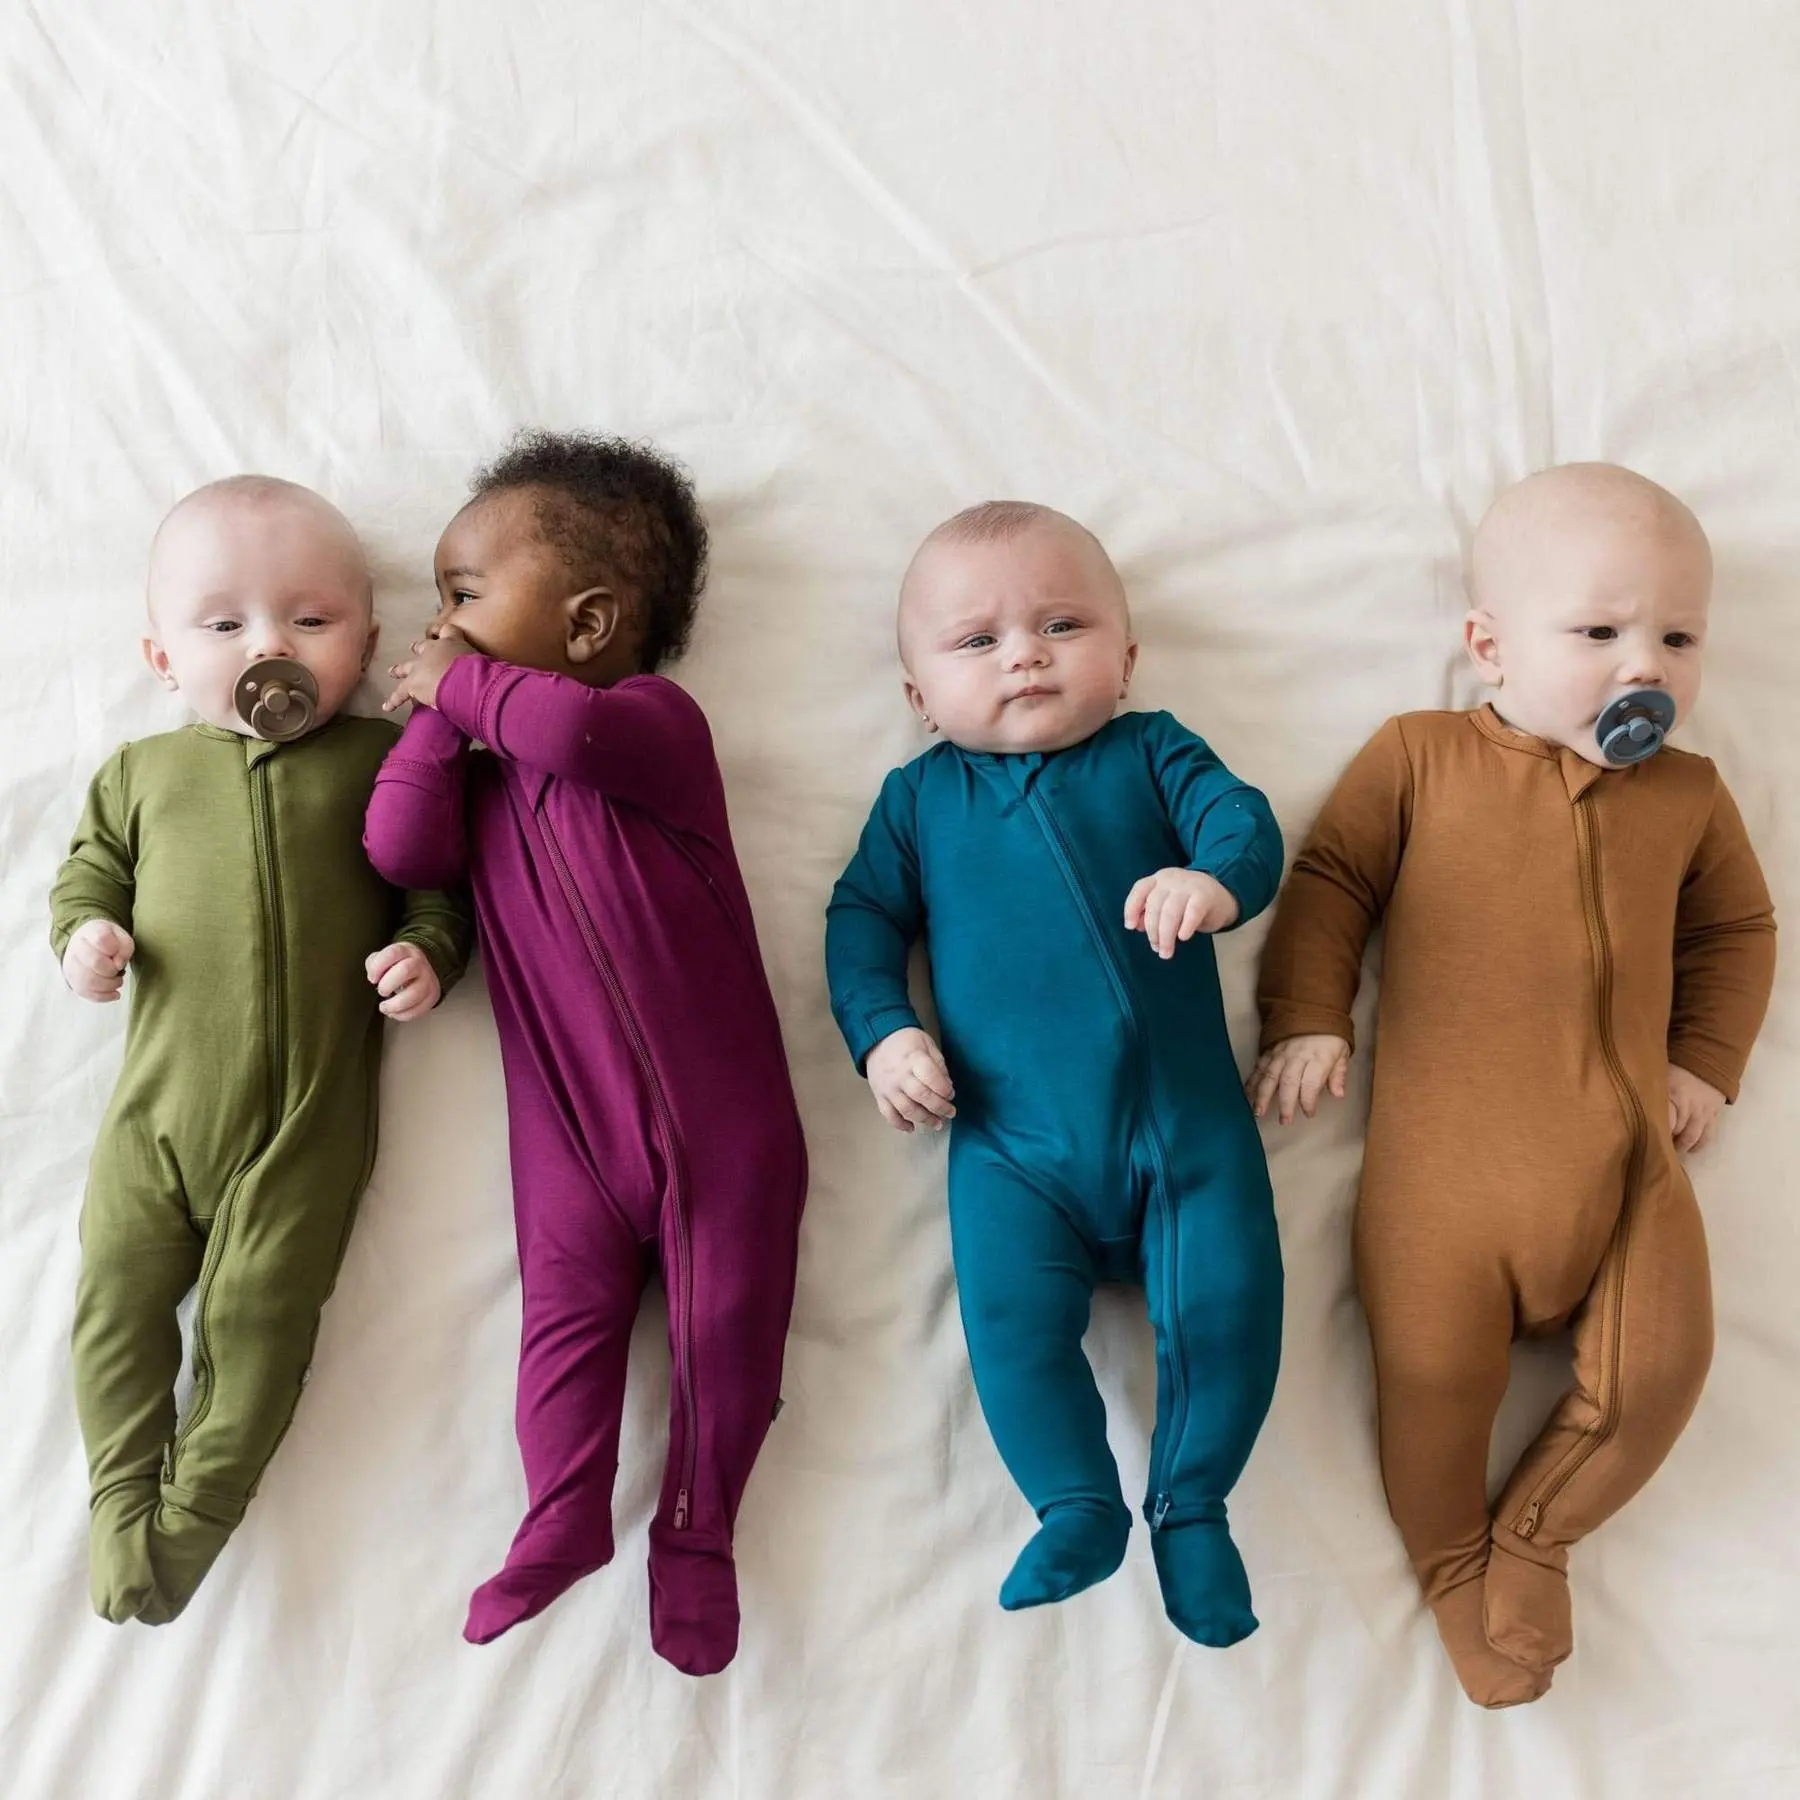 ملابس أطفال حديثي الولادة من مصنع هونجبو, ملابس أطفال حديثي الولادة من القماش الطبيعي سادة بأكمام طويلة وشريط قدم من خشب الخيزران لعام 100% بيجامة أطفال بسوستة